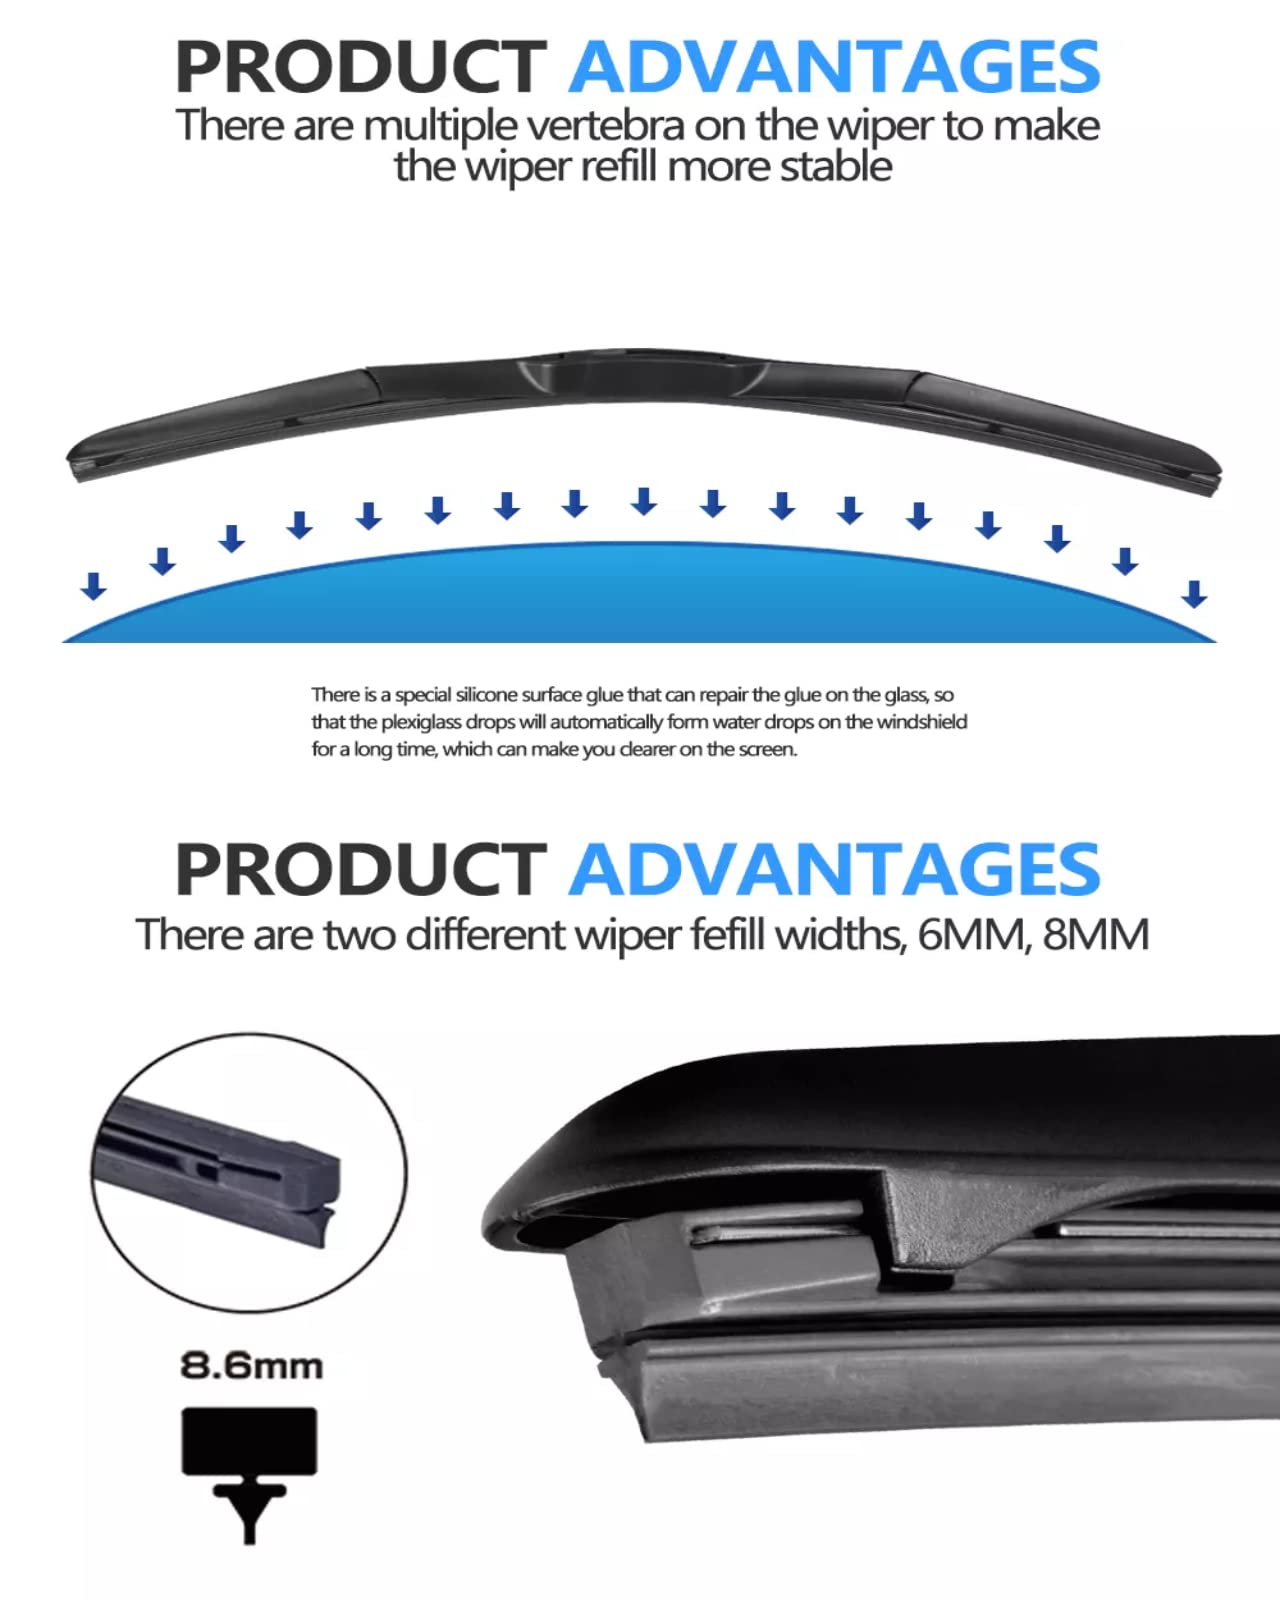 26" & 16" Premium Rubber Wiper Blades - Quiet & Durable